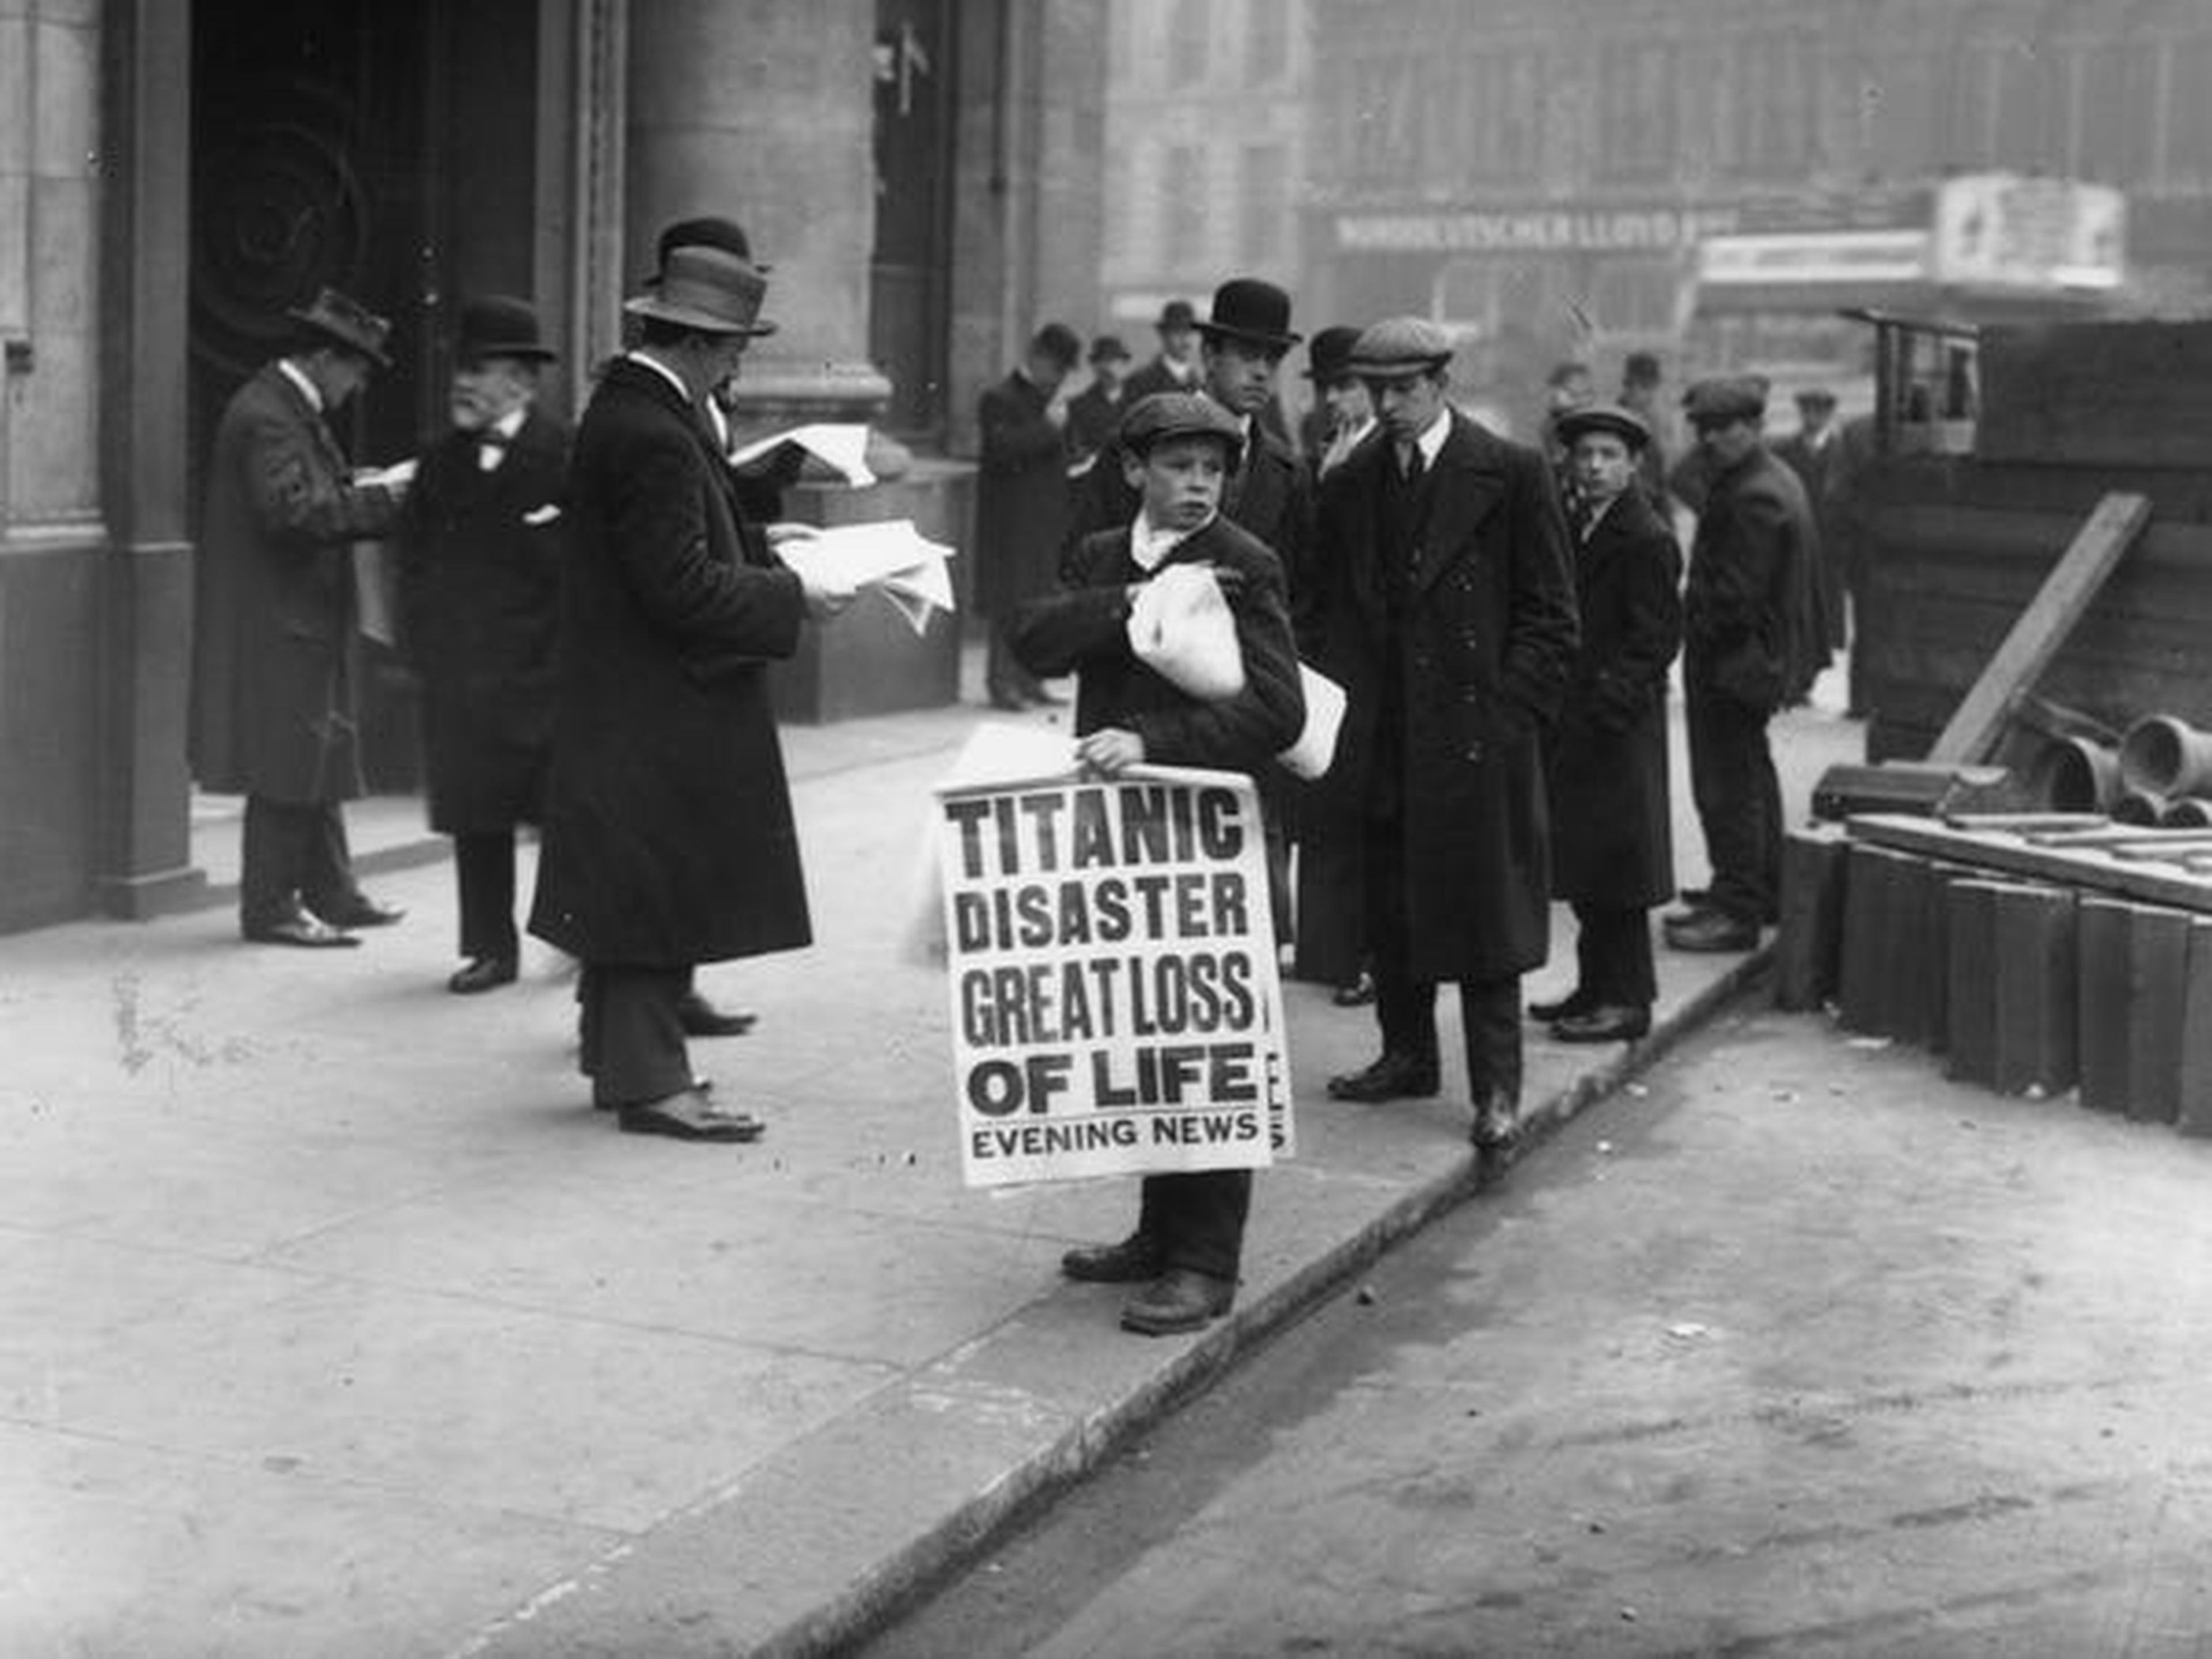 El repartidor de periódicos Ned Parfett vende ejemplares del Evening News que relata el desastre marítimo del Titanic, en las afueras de las oficinas de White Star Line en Oceanic House en Londres.